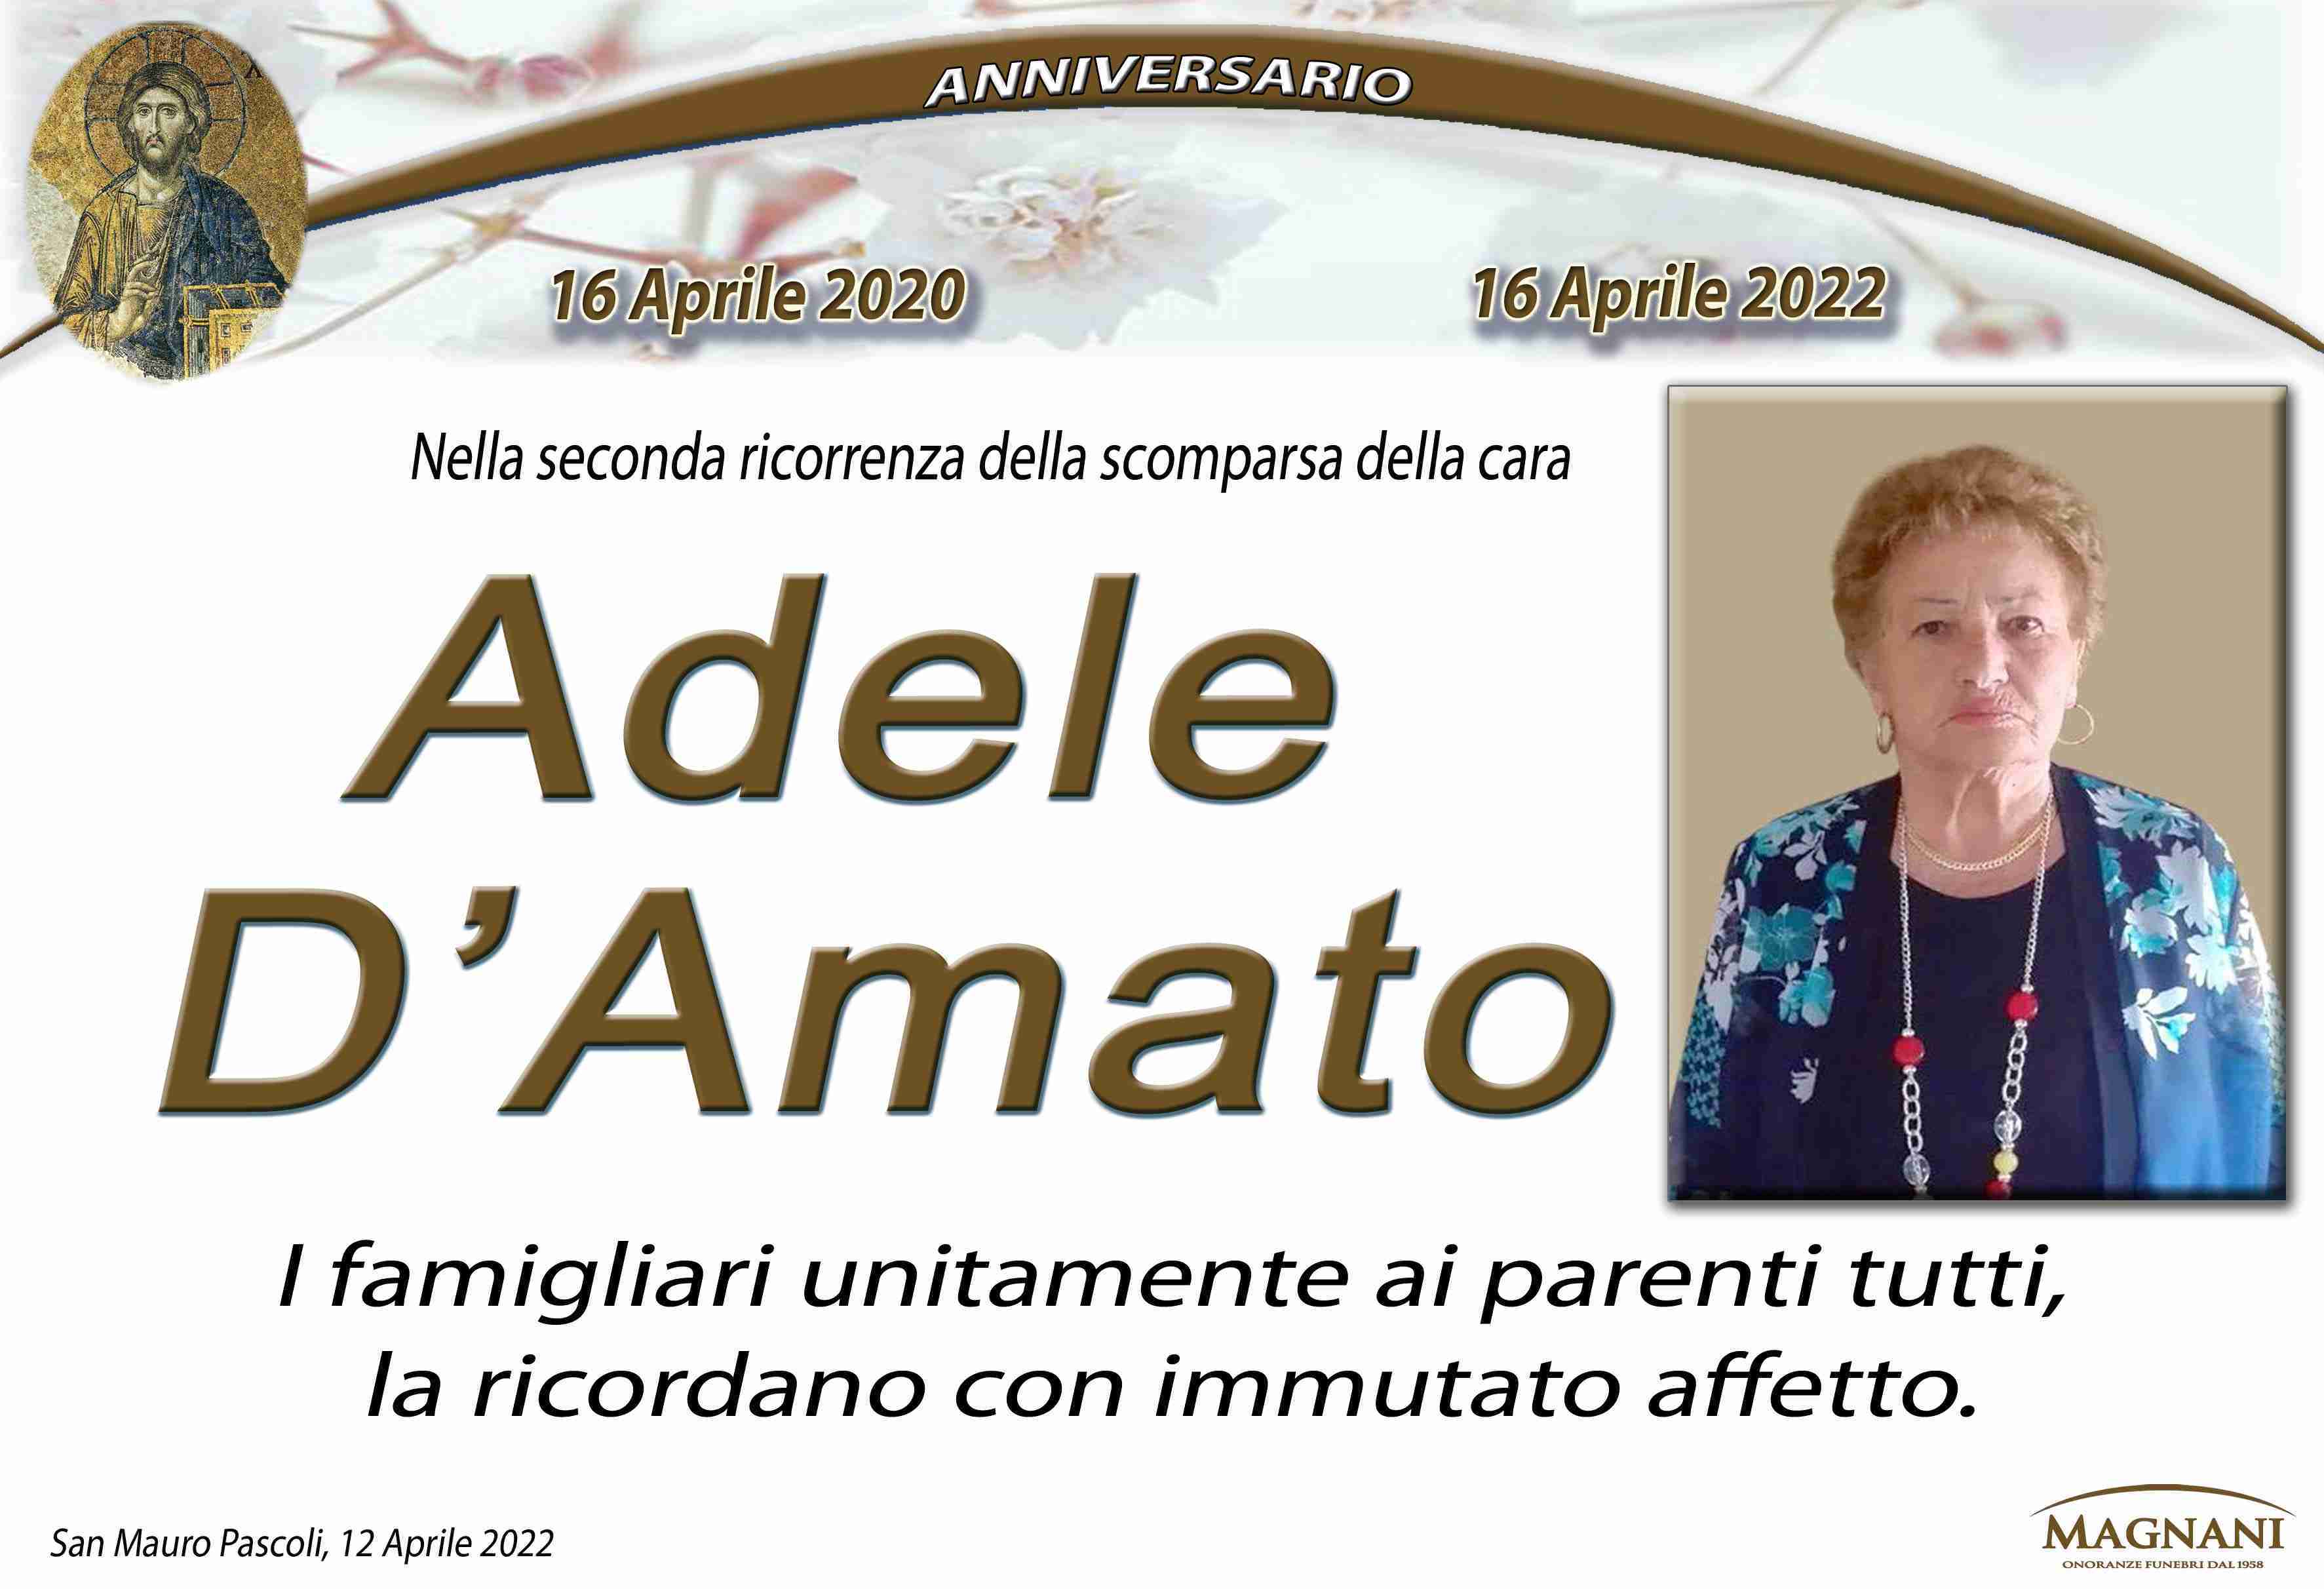 Adele D'Amato